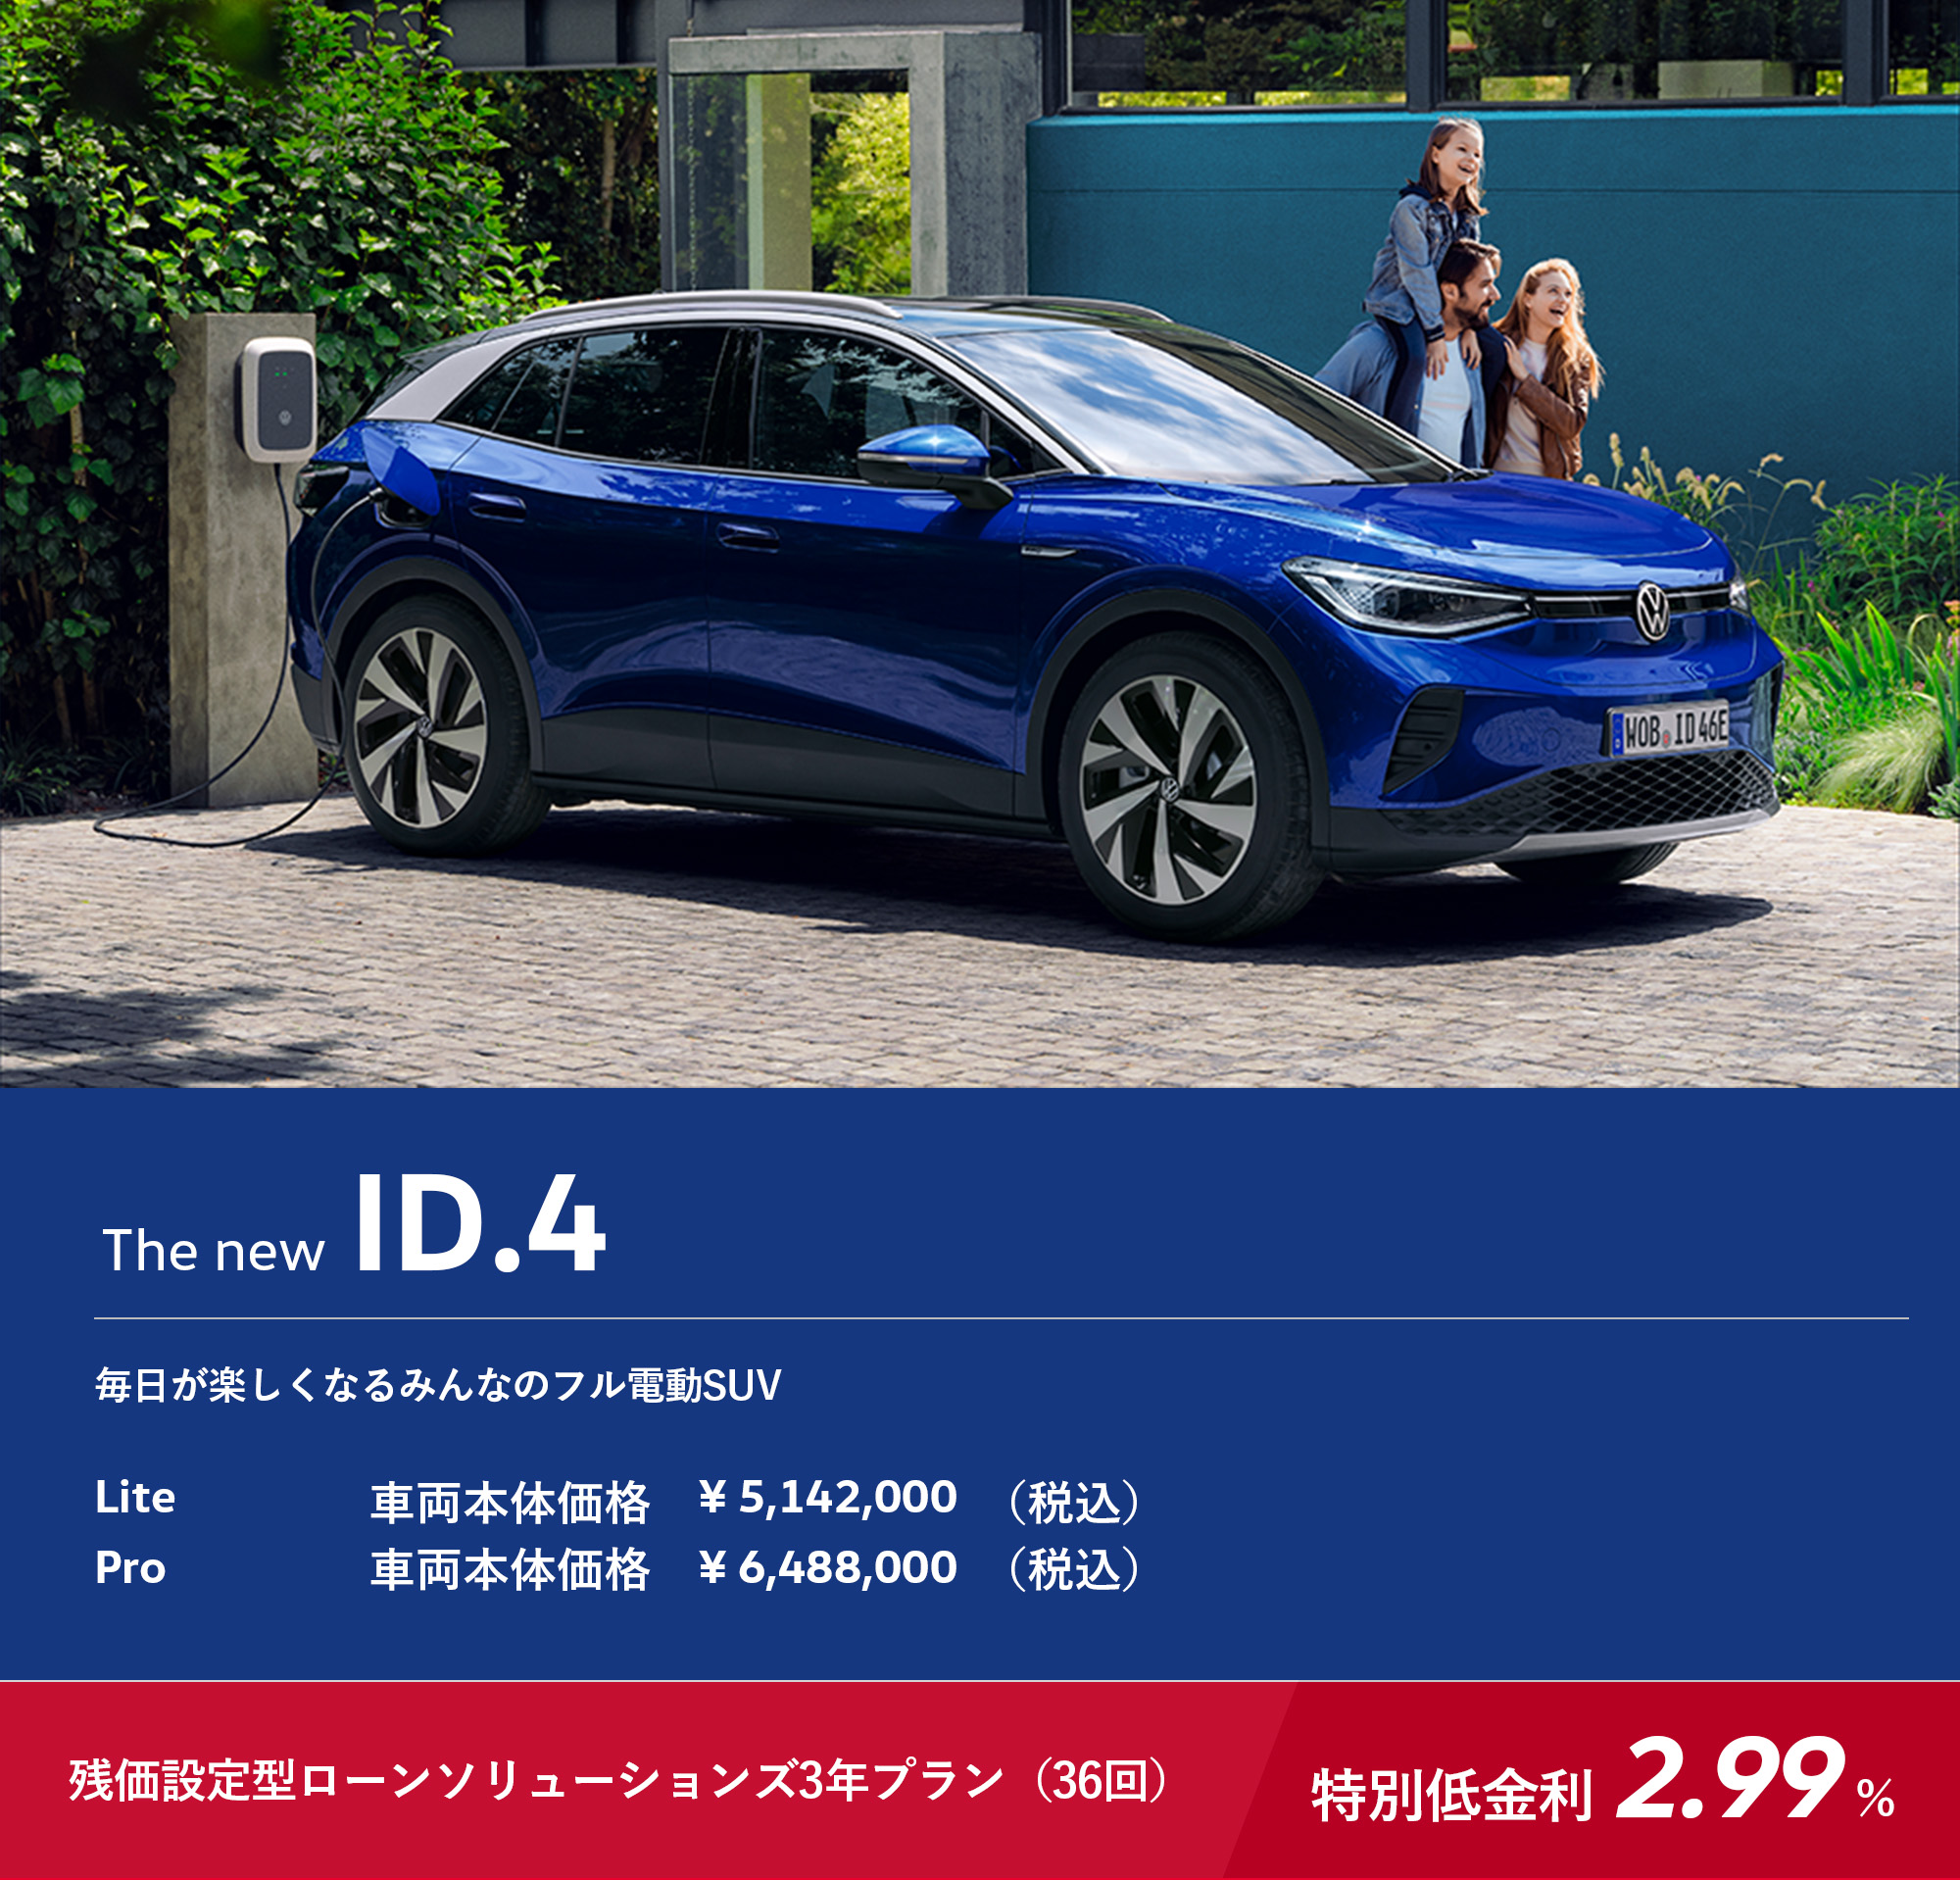 The new ID.4 毎日が楽しくなるみんなのフル電動SUV